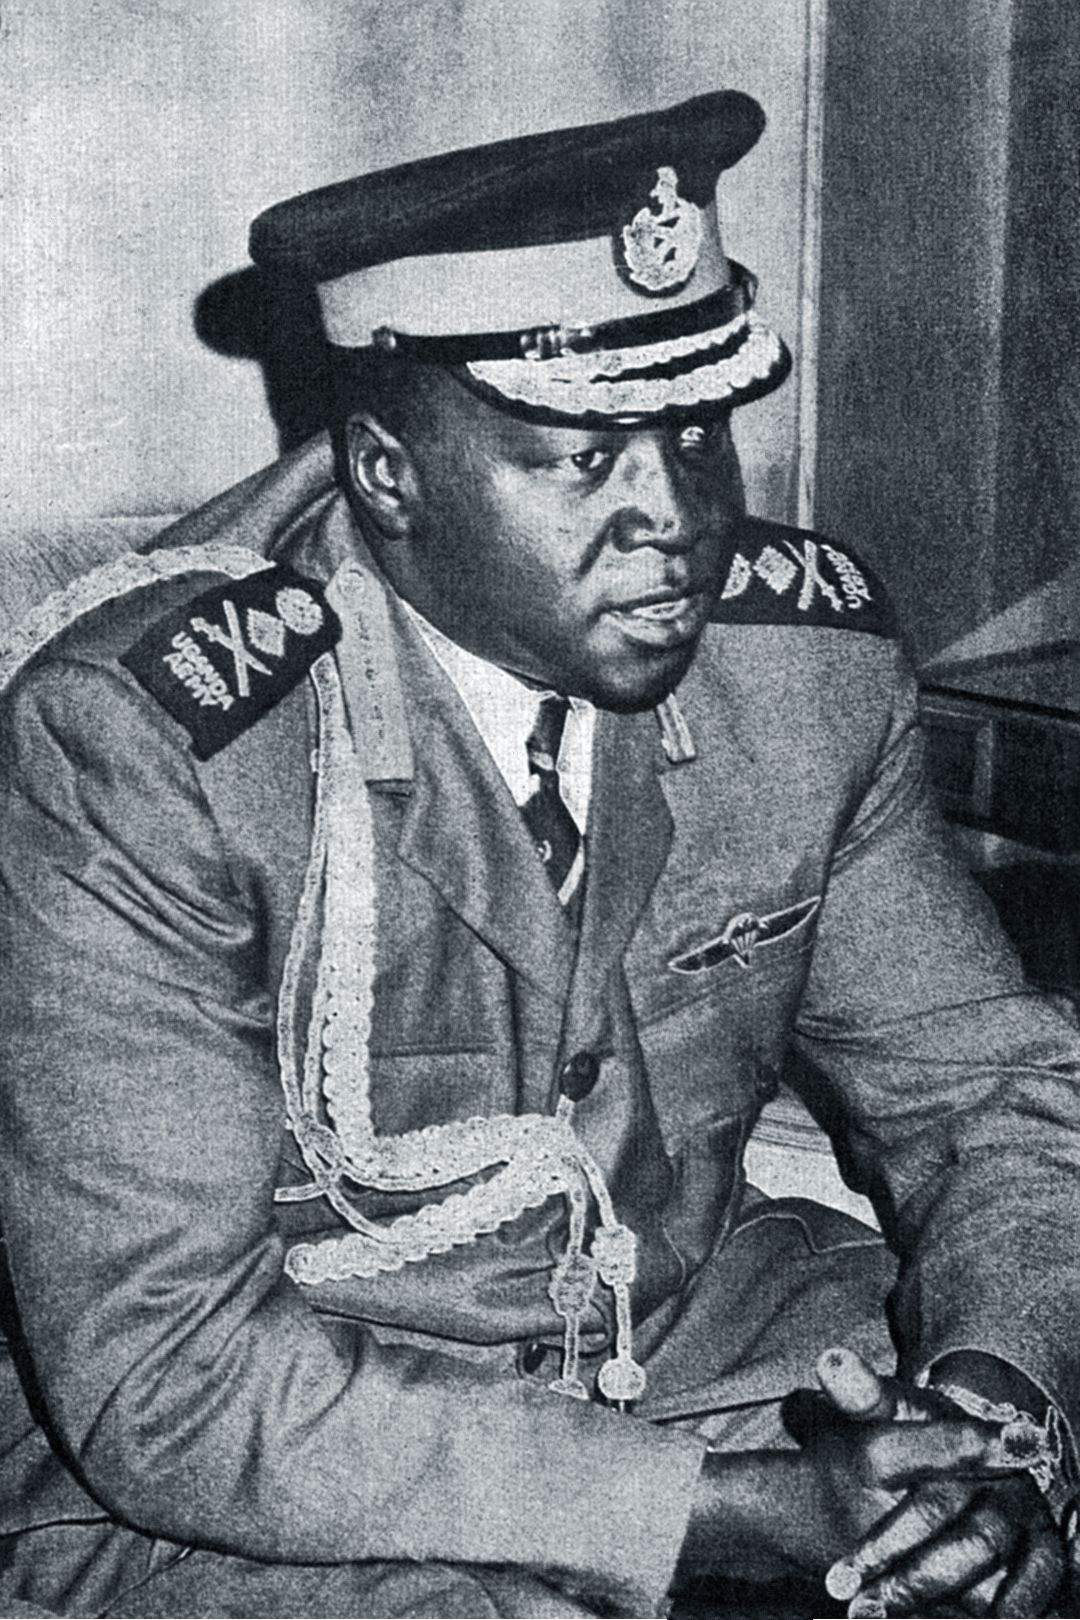 Amin en 1973, conocido como "Carnicero de Uganda," es considerado uno de los déspotas más crueles de la historia africana. (Wikipedia)